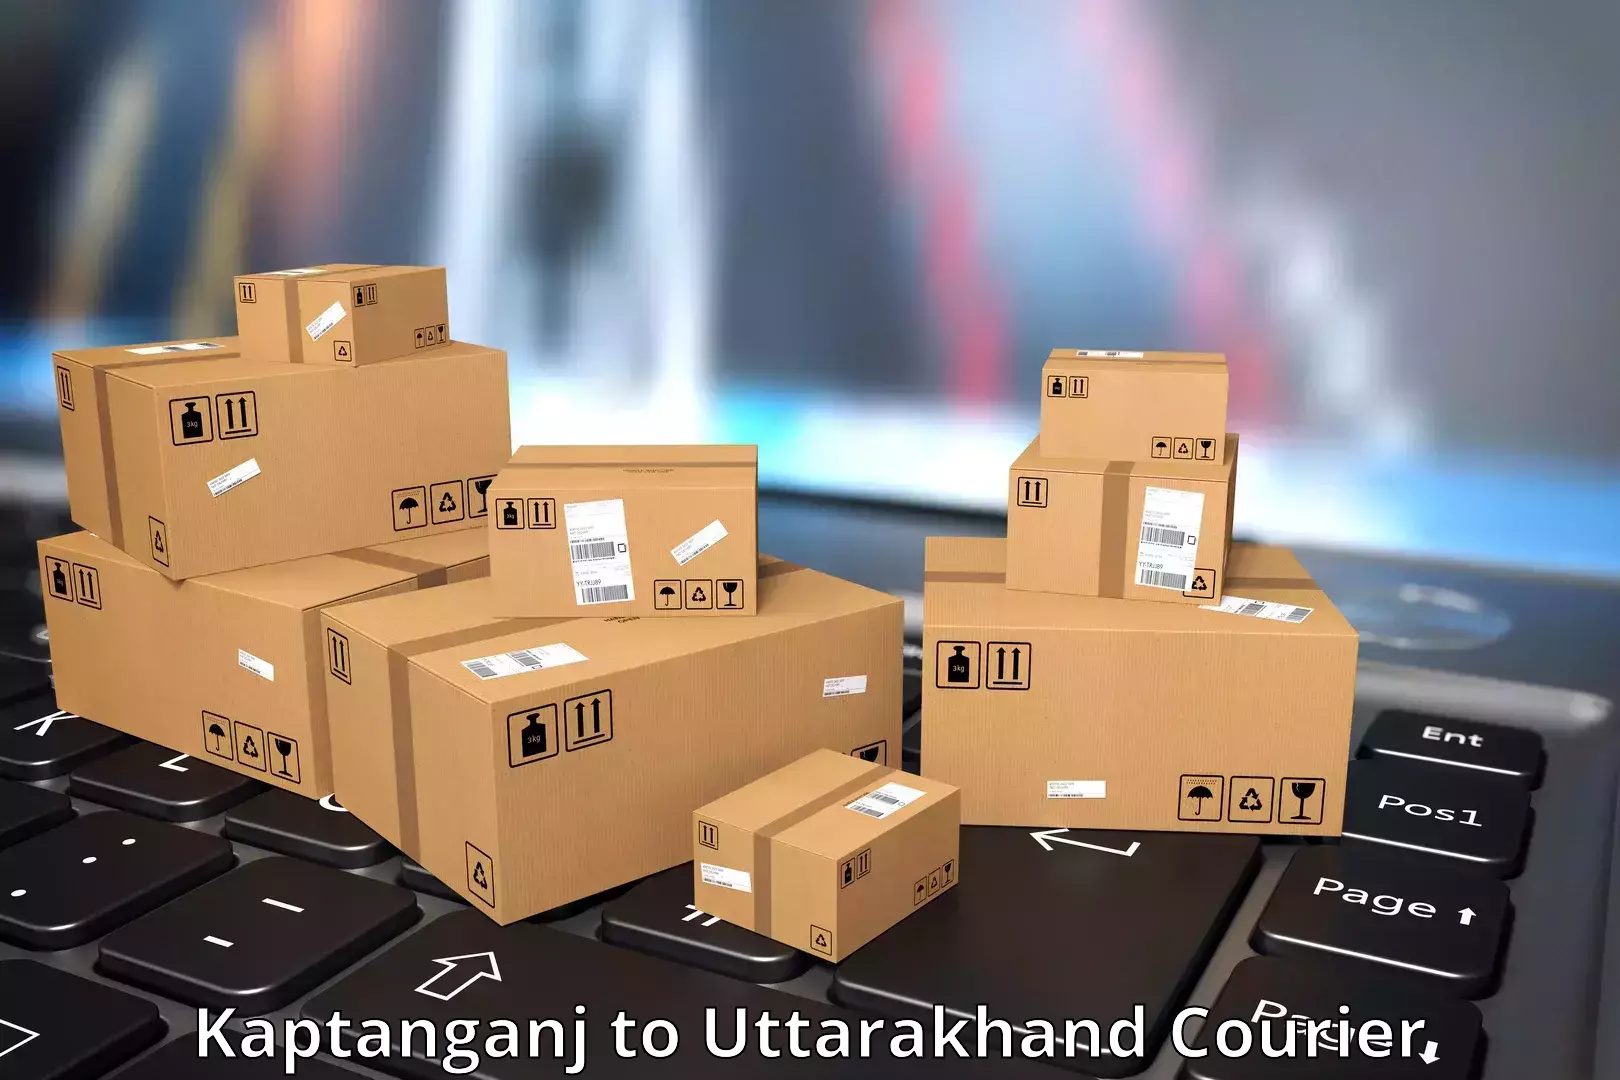 Urgent courier needs Kaptanganj to Uttarakhand